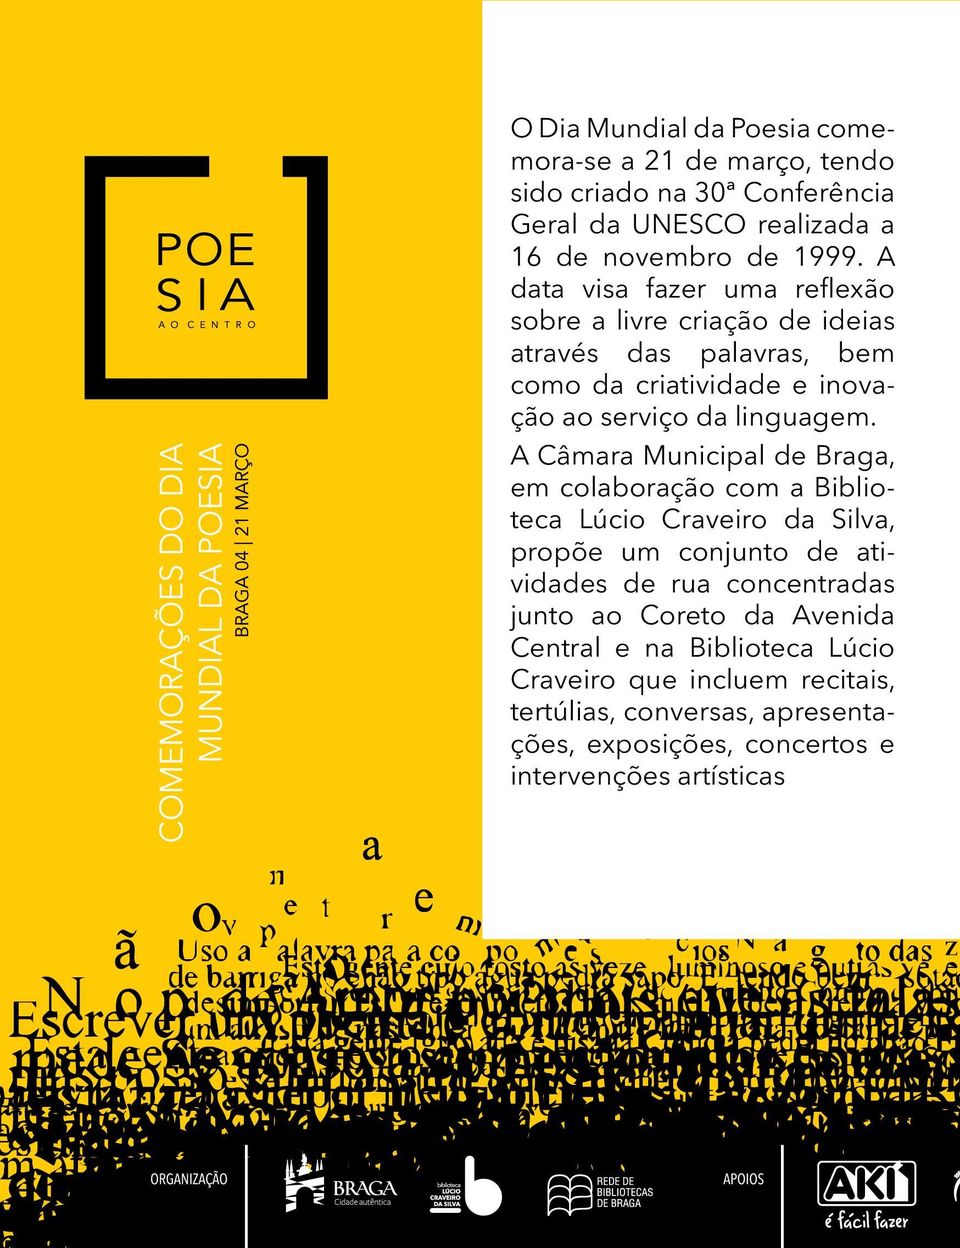 A Câmara Municipal de Braga, em colaboração com a Biblioteca Lúcio Craveiro da Silva, propõe um conjunto de atividades de rua concentradas junto ao